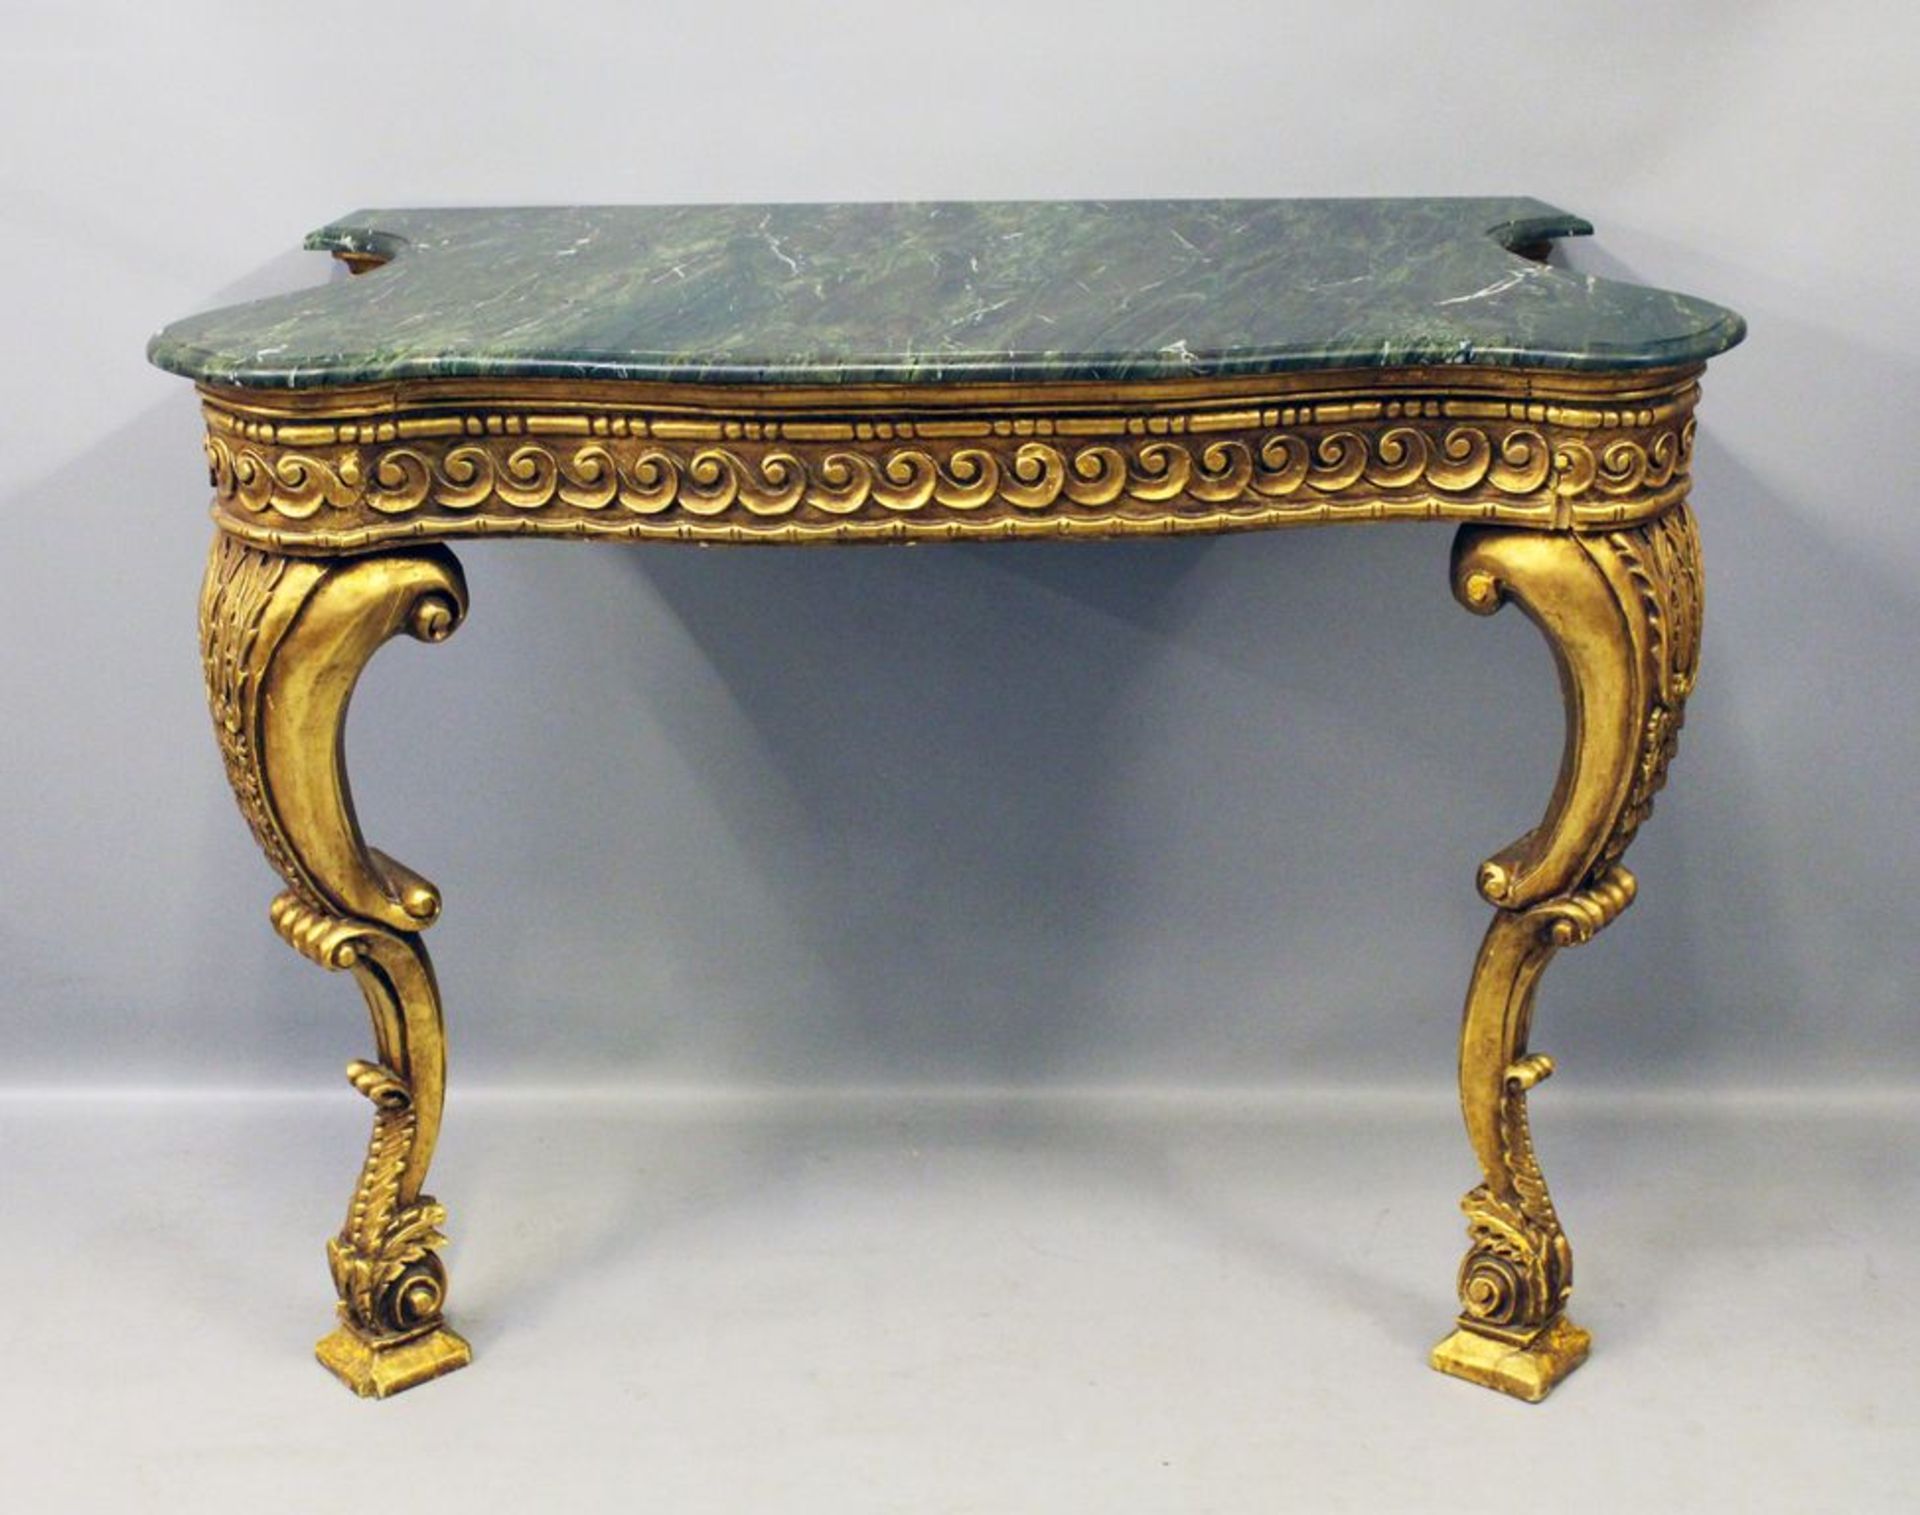 Prunkkonsole im Stil Louis XV. Holz, vergoldet. Geschnitzte Zierornamente (teils best., bzw. 1 Fehls